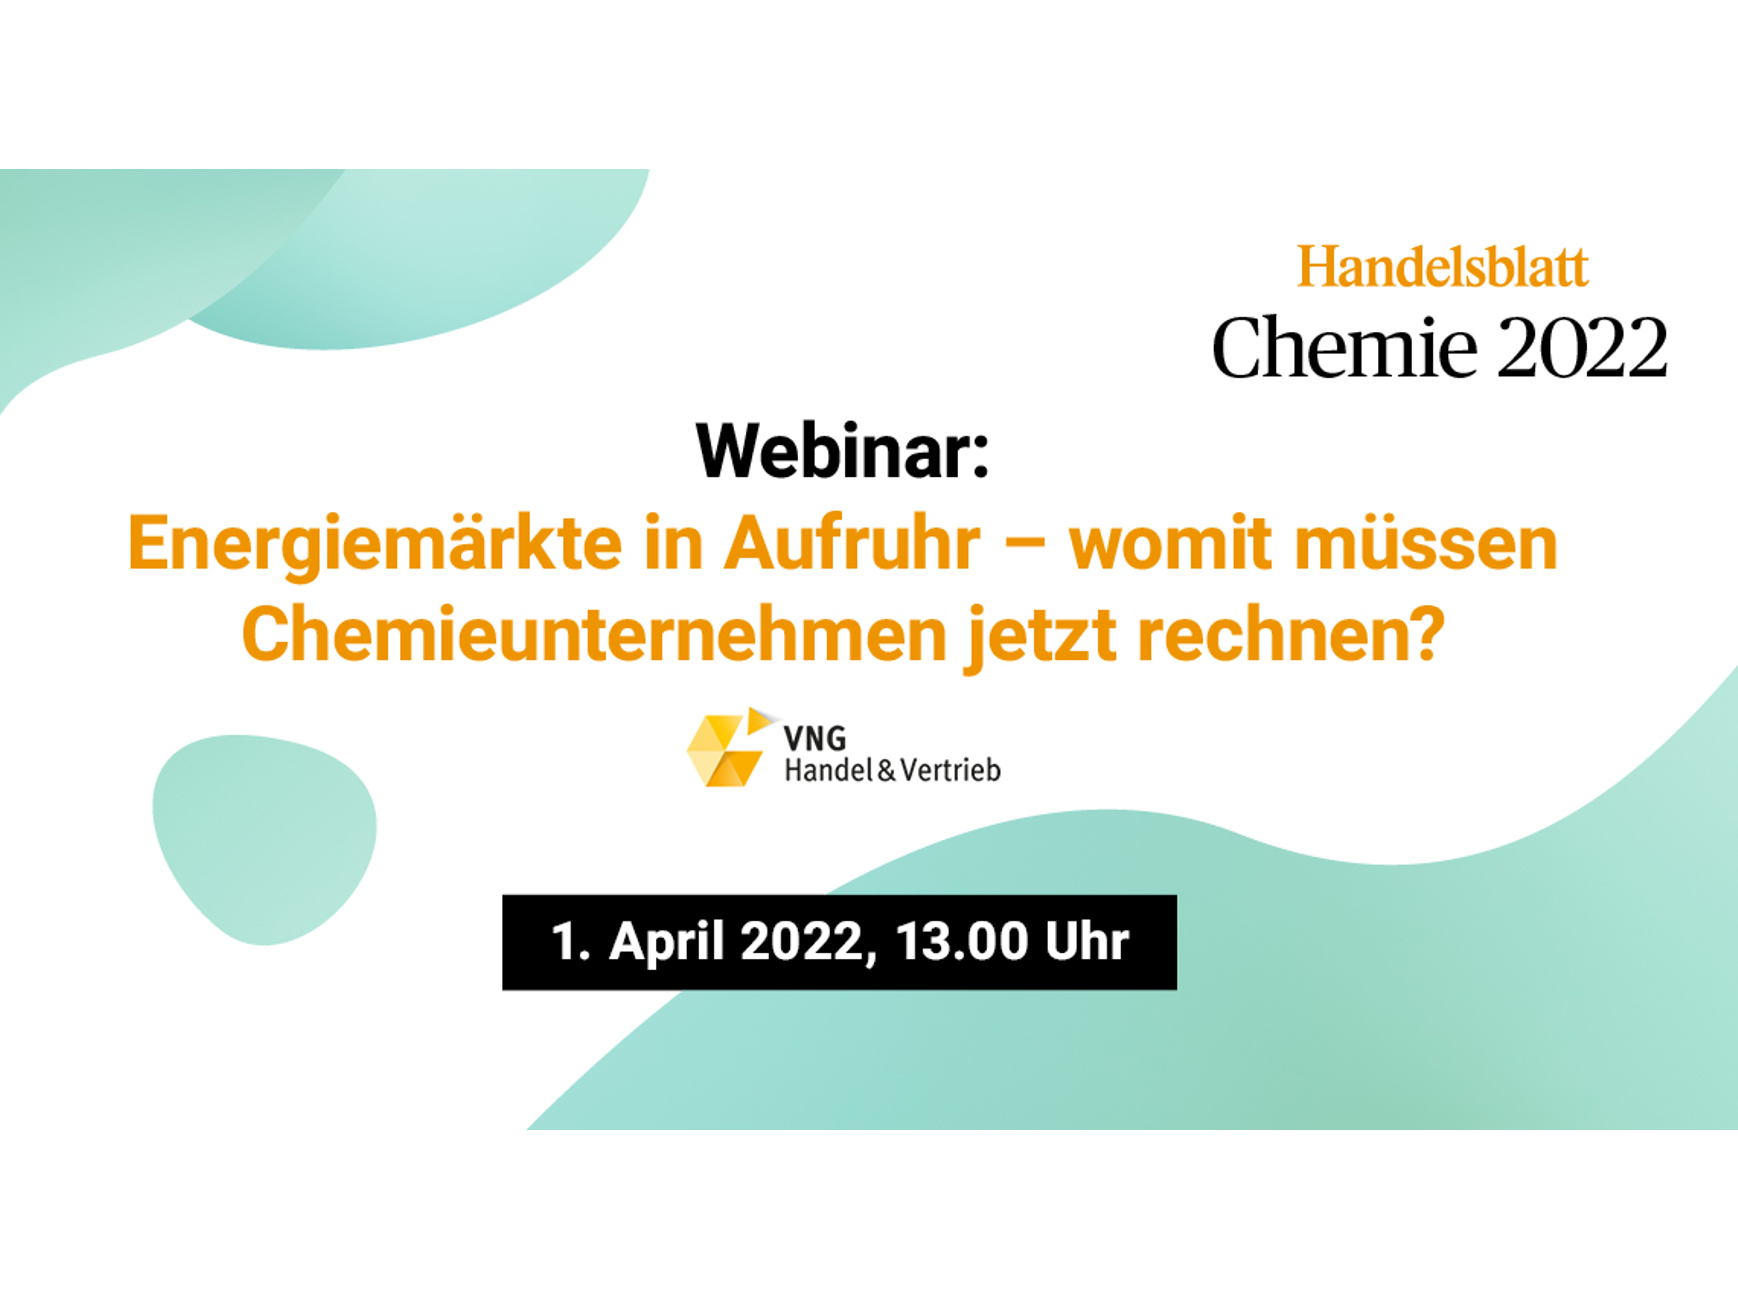 HB Chemie 2022 Webinar